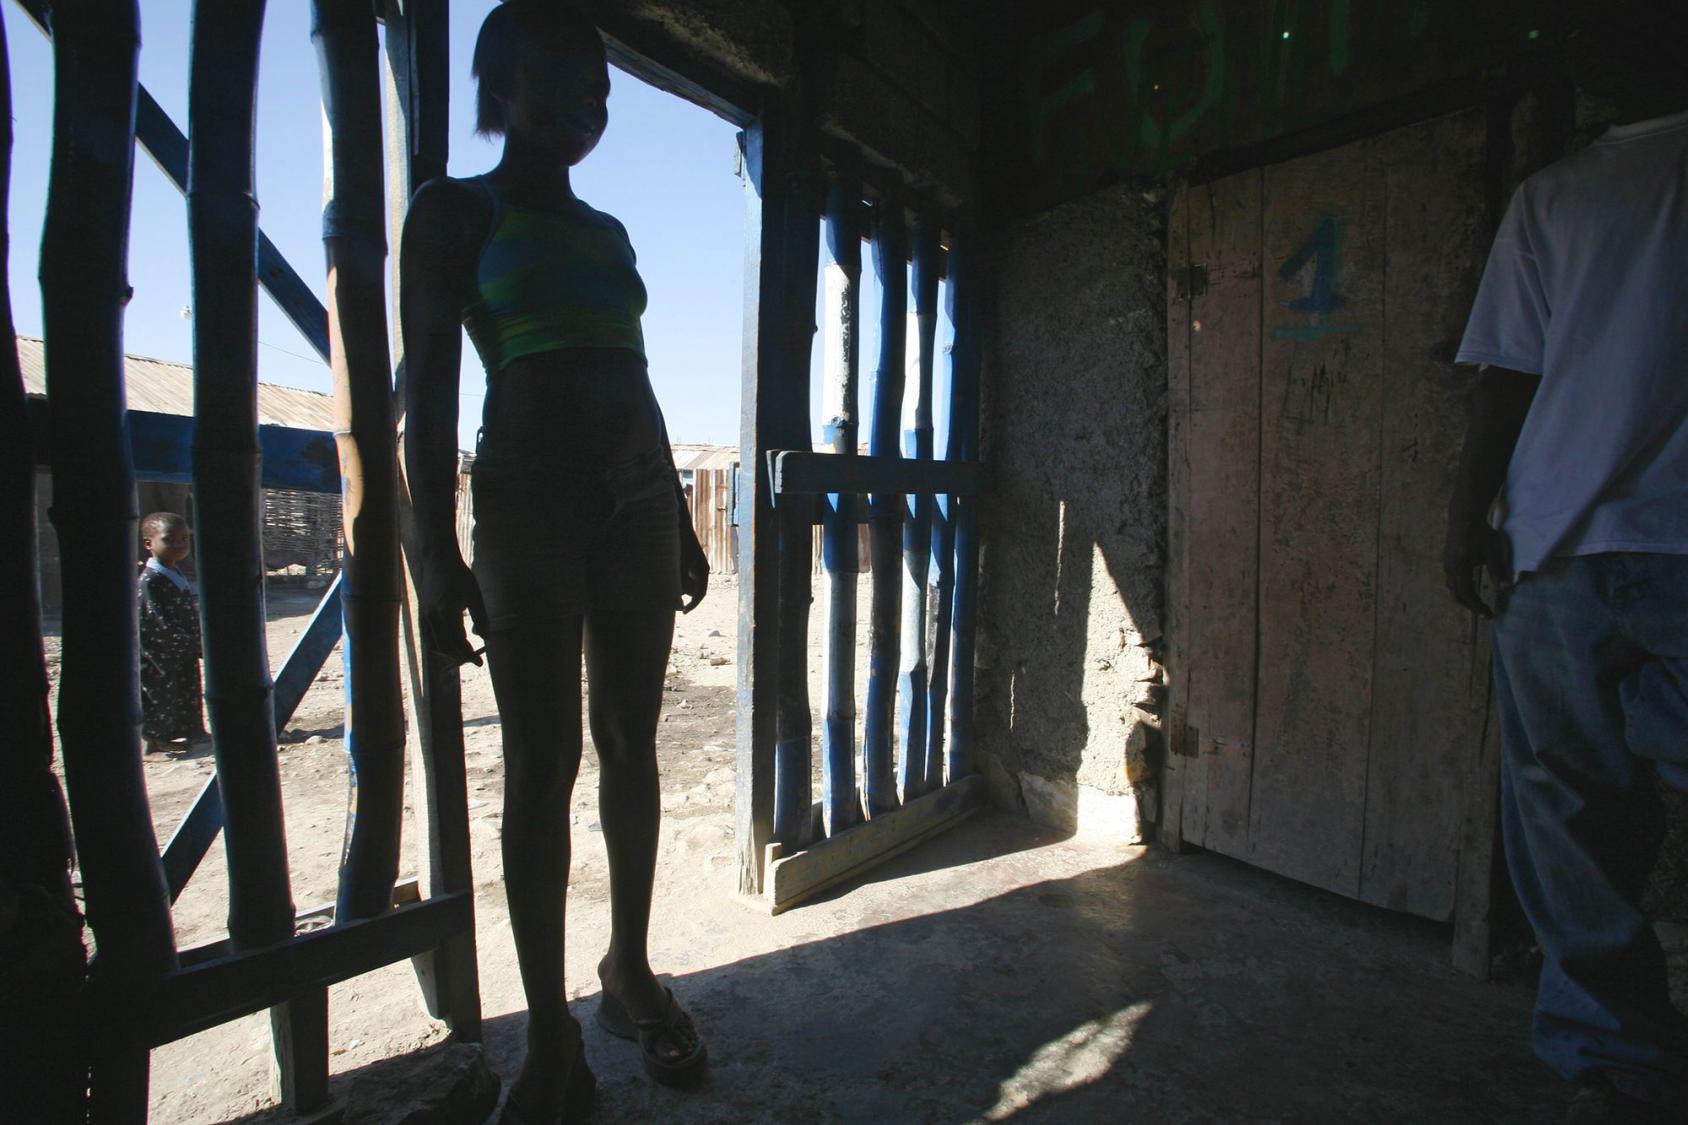 Foto en claro oscuro de la silueta de una persona parada en el marca de una puerta de una estructura cuyas paredes están hechas de rudimentarios barrotes.